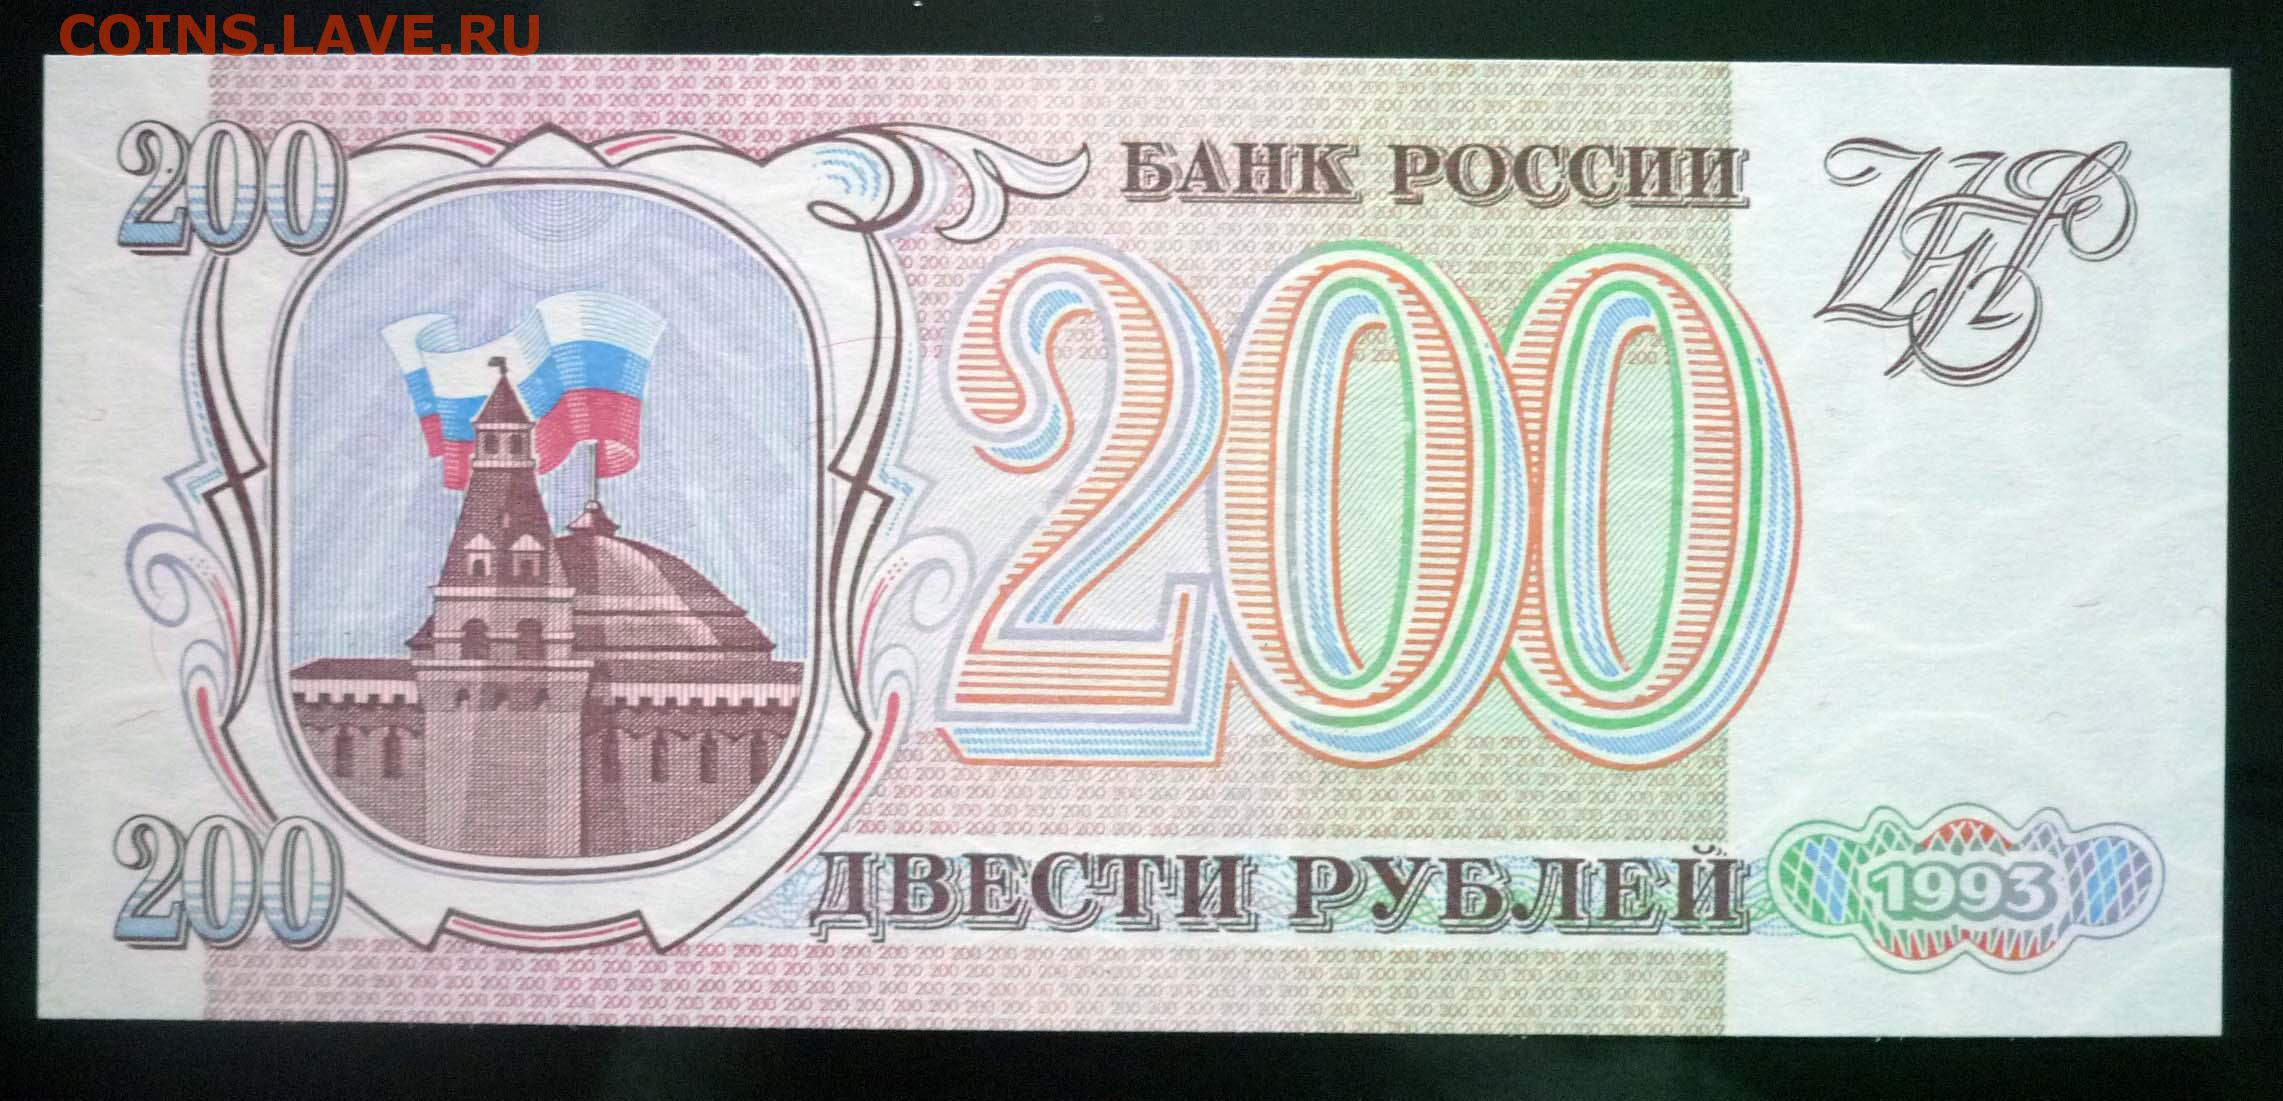 12 200 в рубли. 200 Рублей 1993. Купюра 200 рублей 1993. Банкнота 200 рублей 1993. Двести рублей купюра 1993.